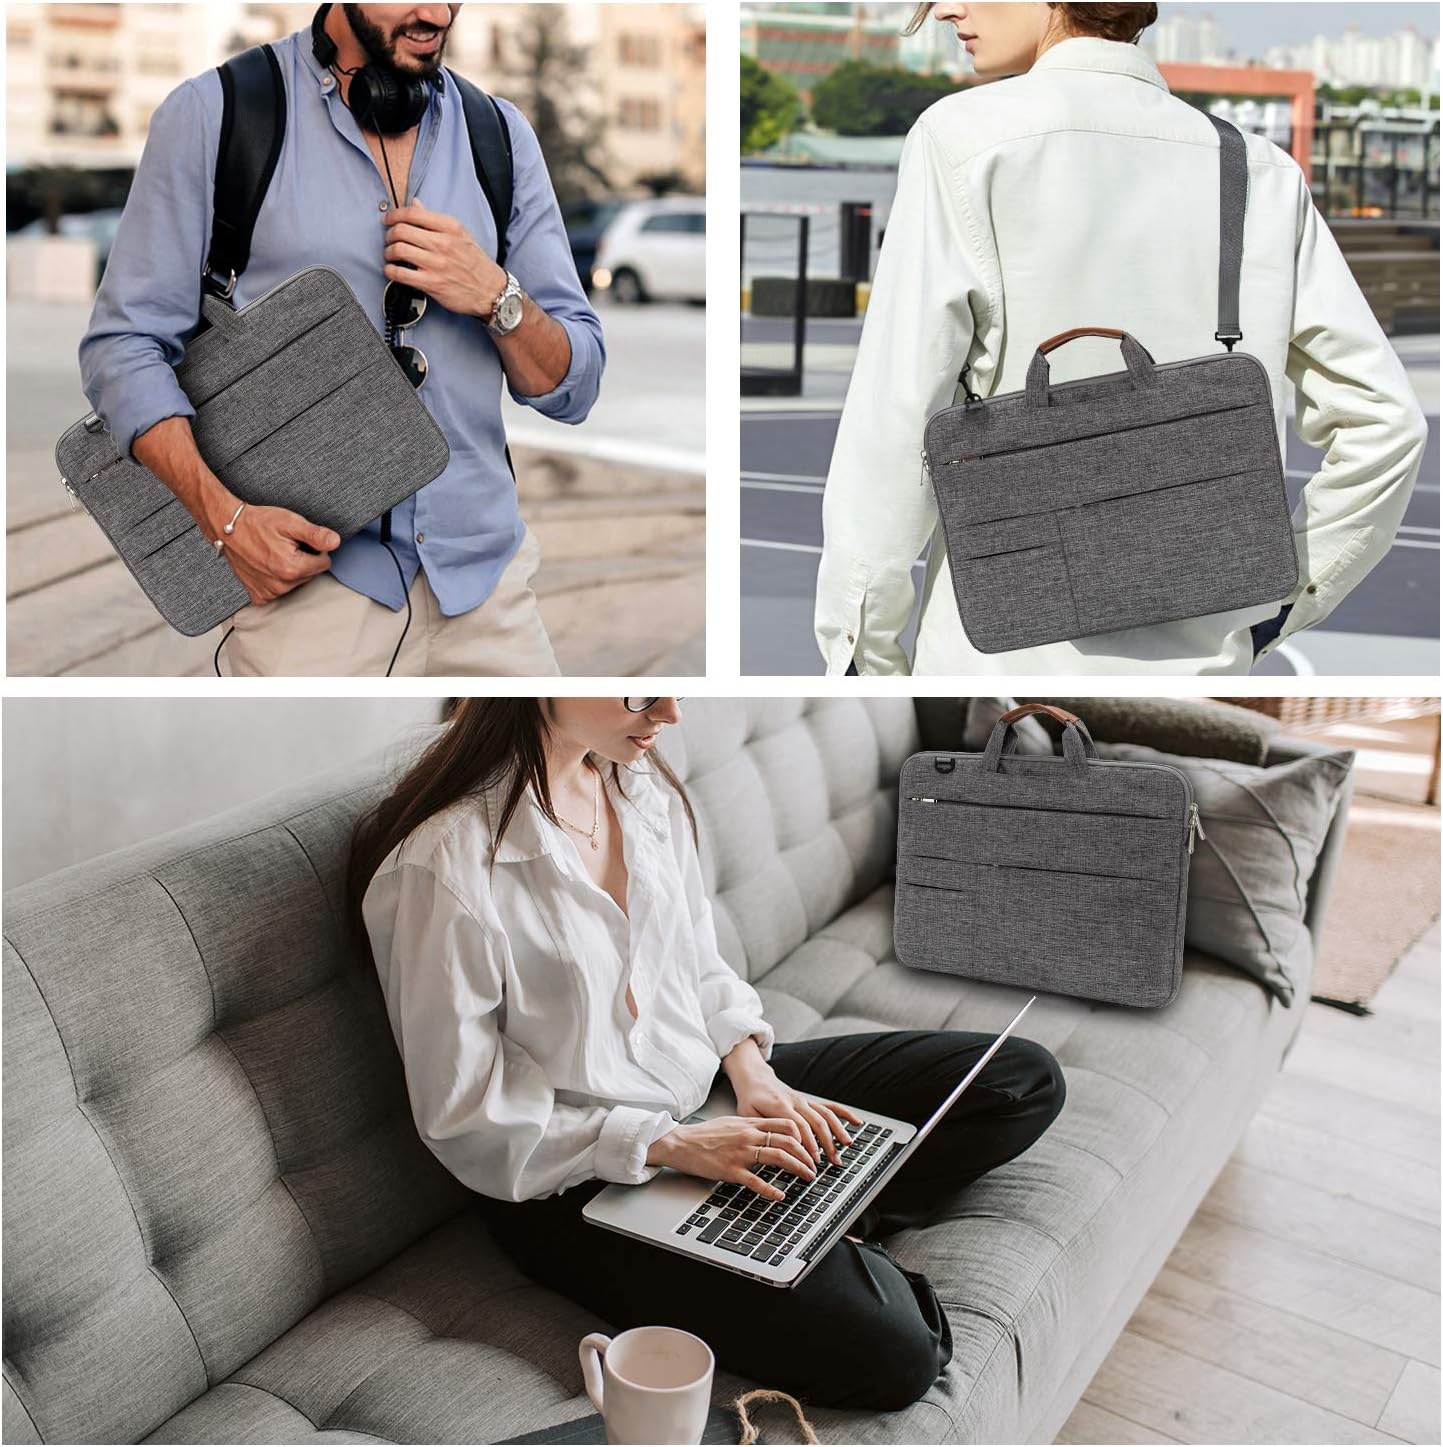 KINGSLONG 15.6 Inch Laptop Bag Messenger Shoulder Bag Multifunctional Backpack Hand Bag Black Briefcase Travel Backpack